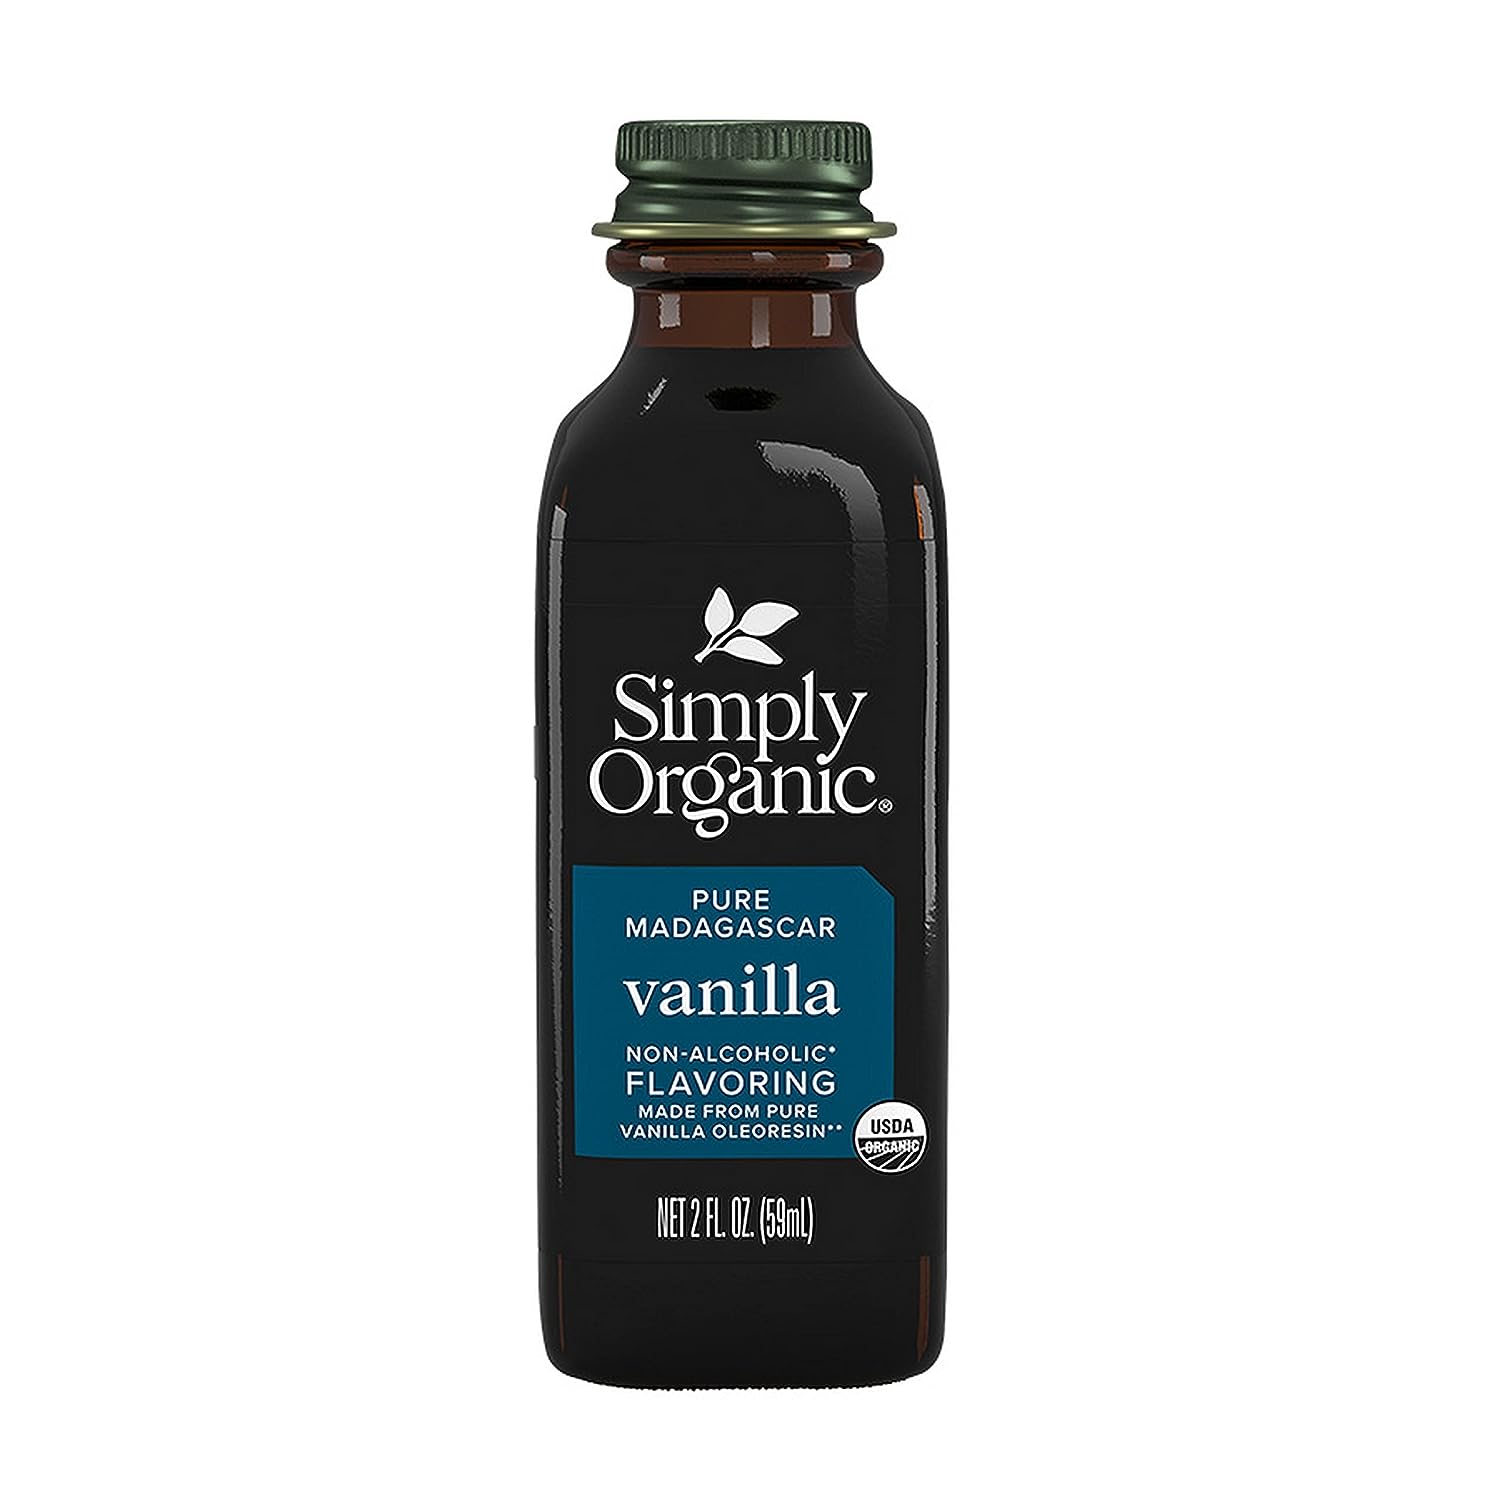 TINH CHẤT VANI HỮU CƠ Tinh chất Vanilla chiết xuất hữu cơ - Simply Organic